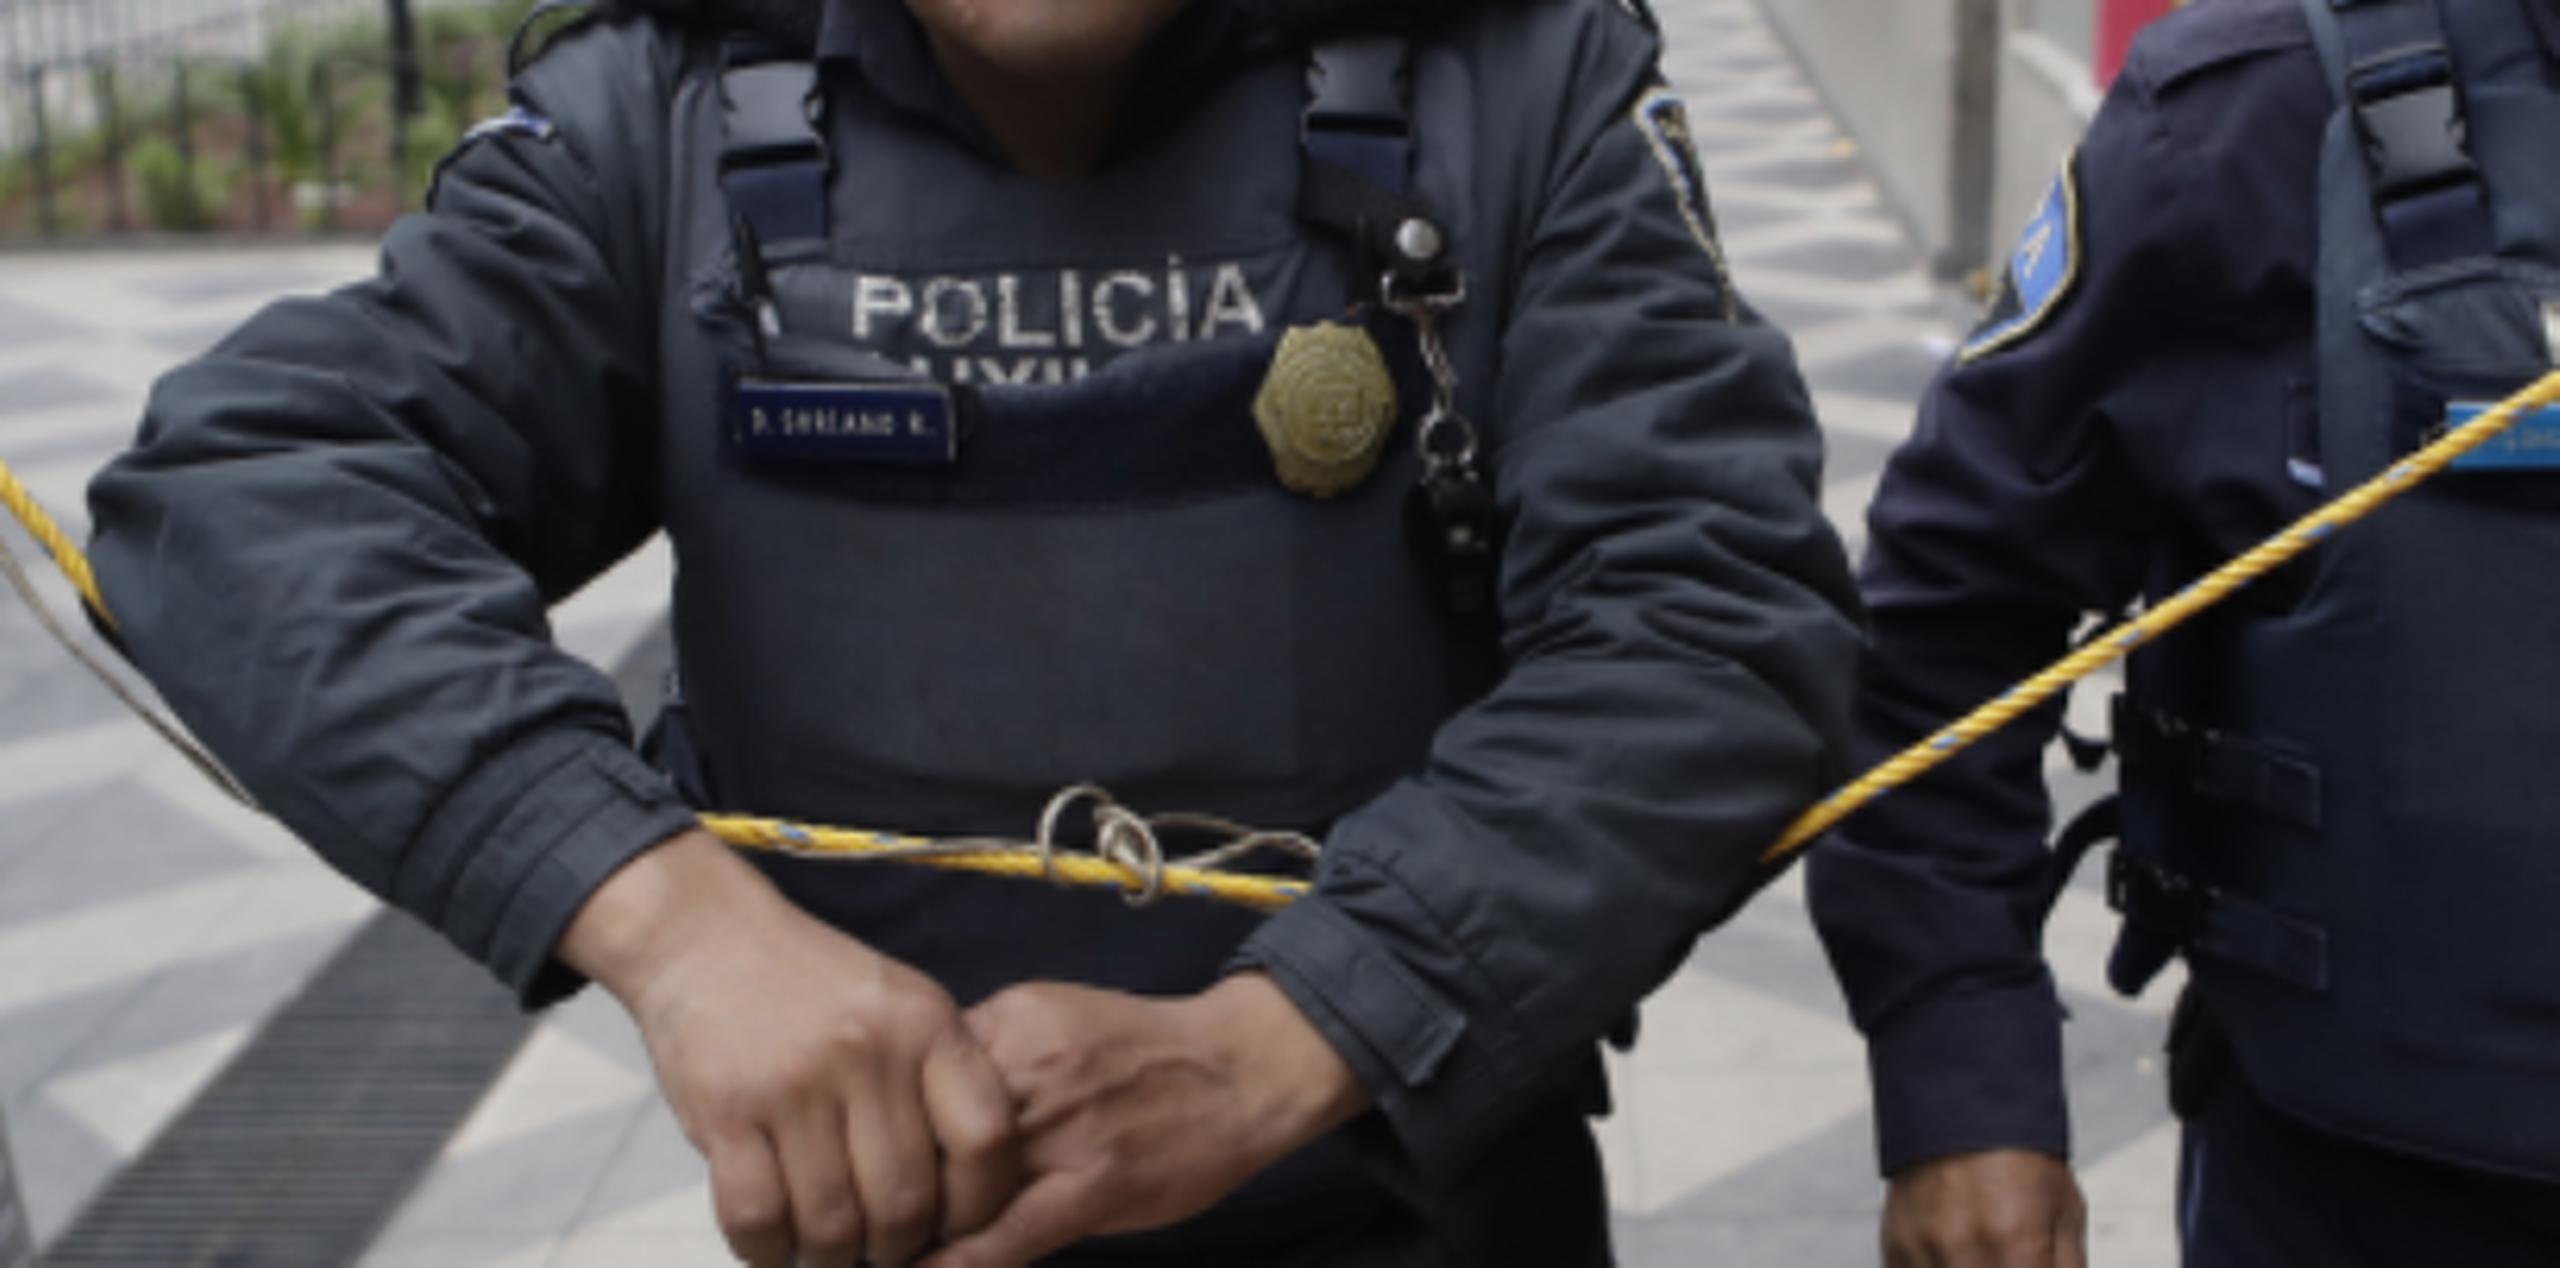 La fiscalía de Oaxaca informó que los hechos imputados a los policías ocurrieron el 13 de octubre en el Rancho La Engorda, del municipio de San Juan Bautista Tuxtepec. (AP)